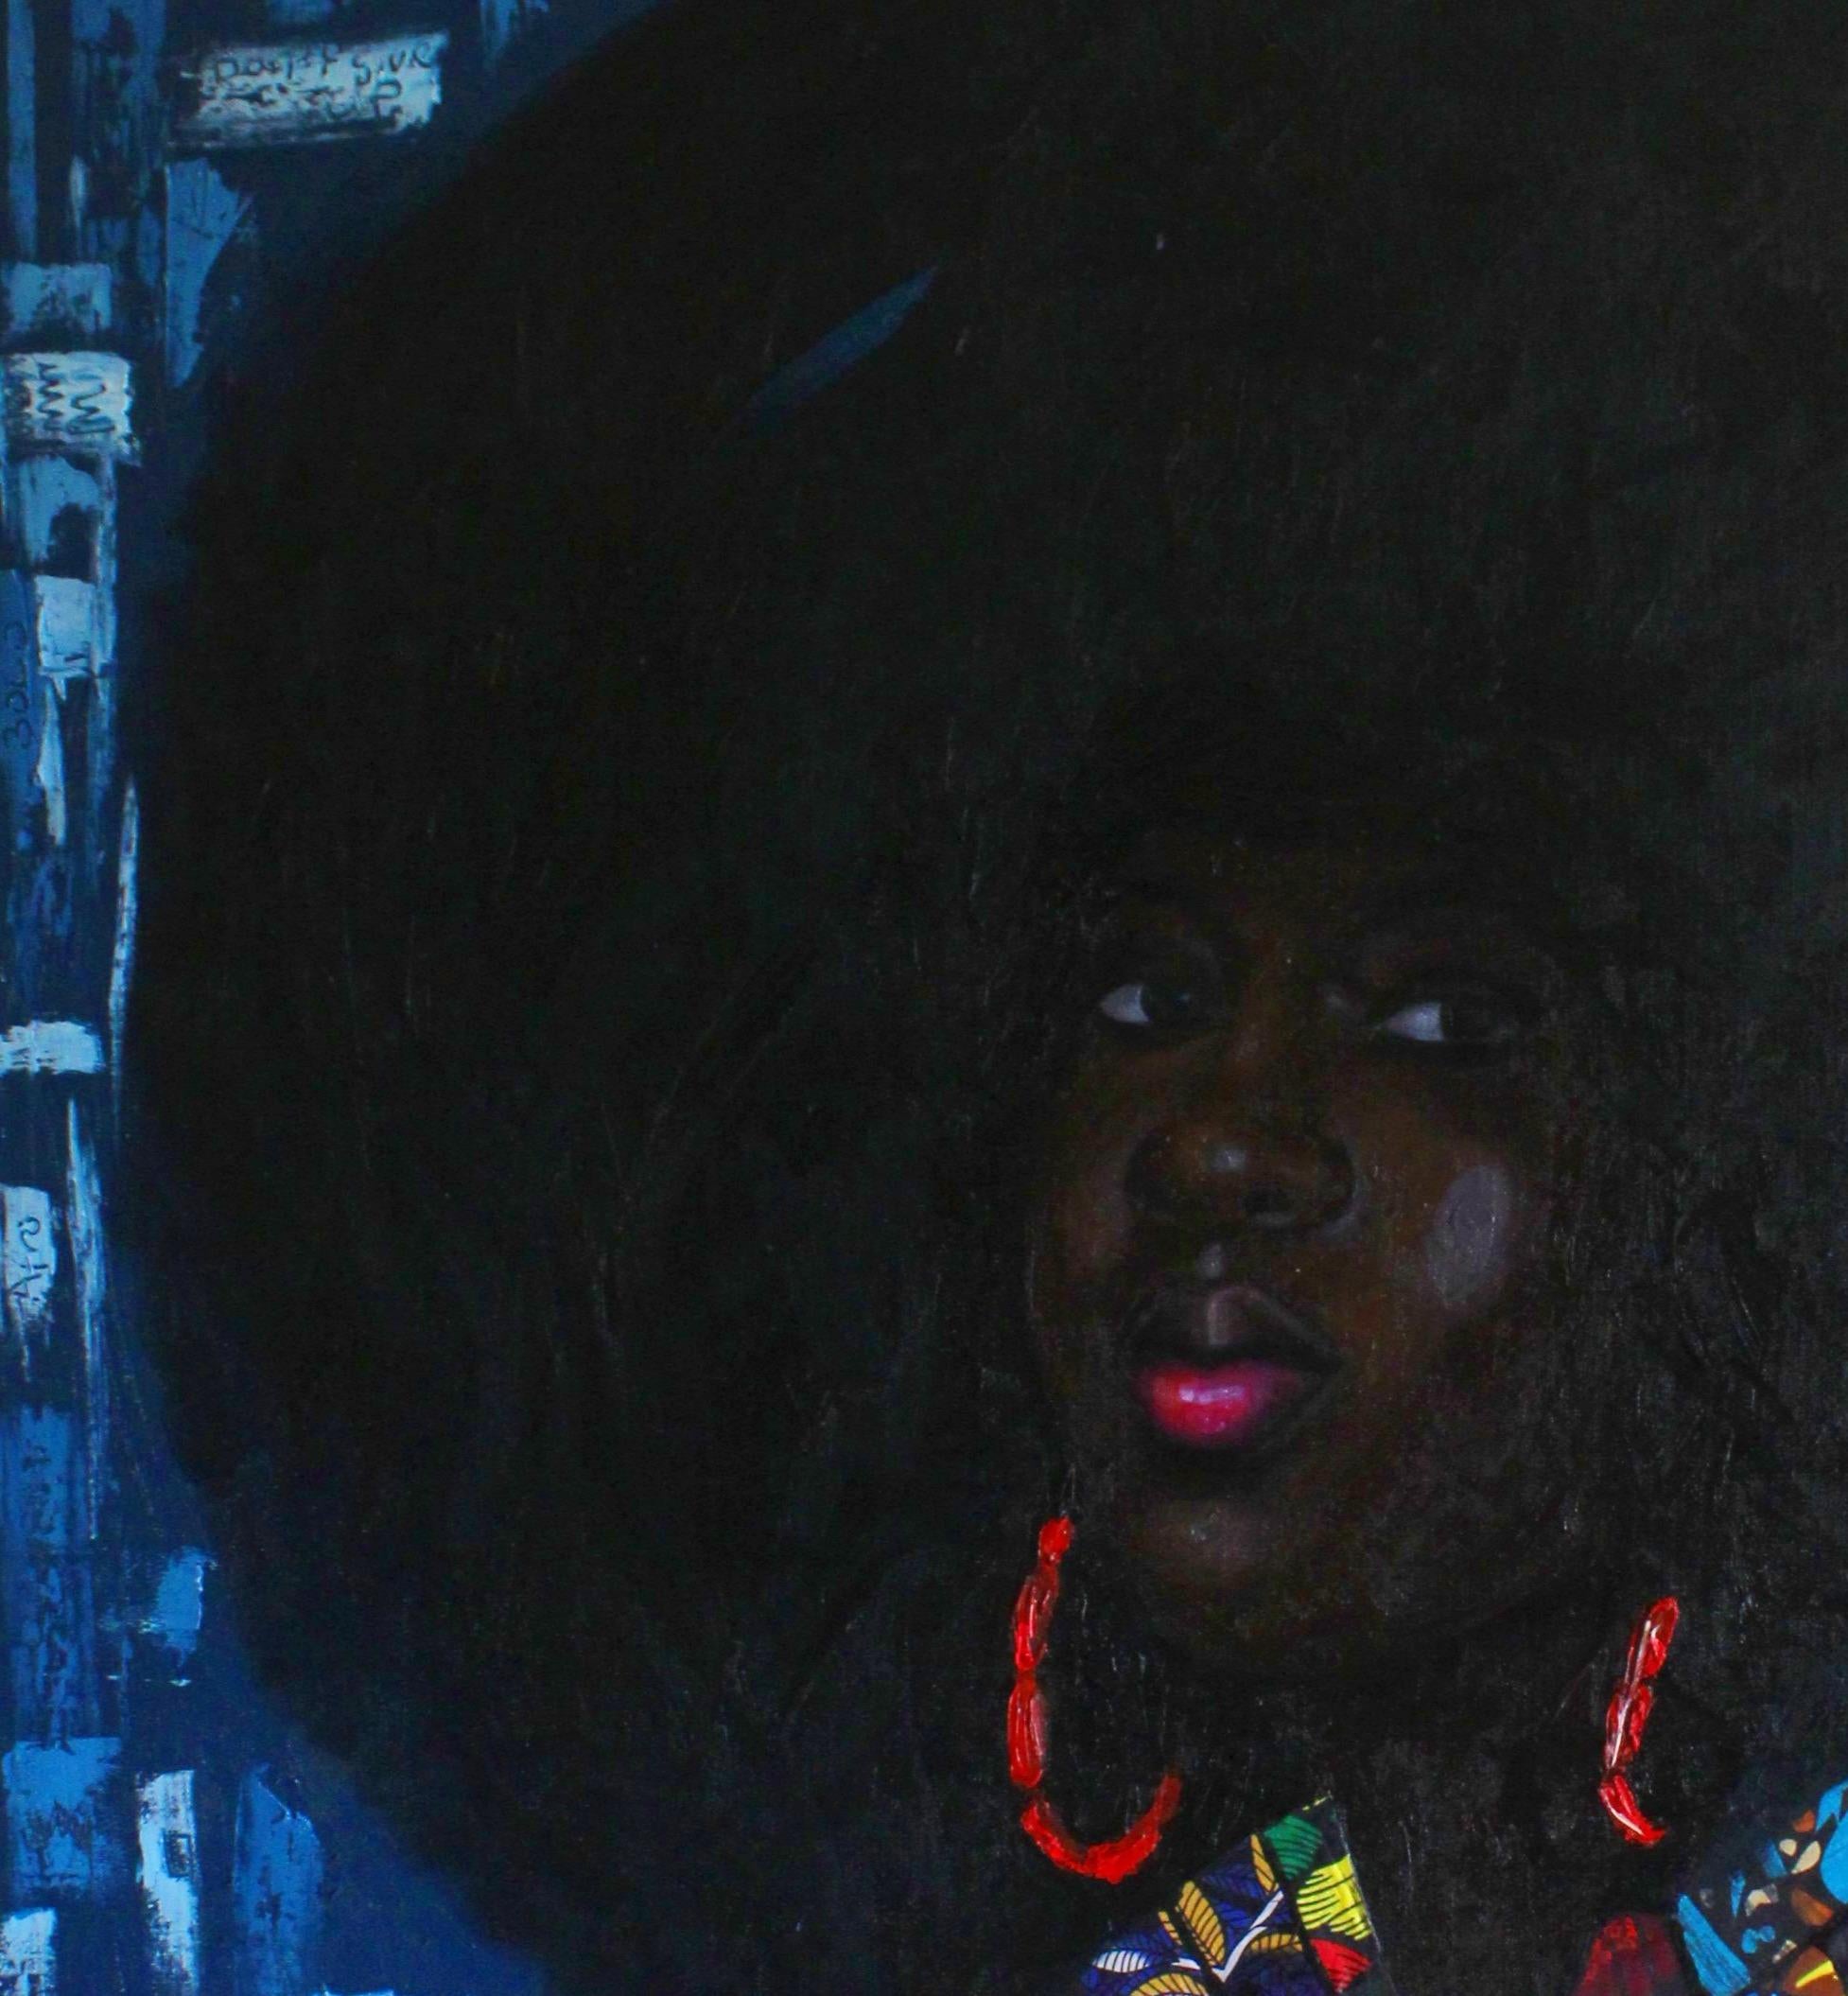 Afrozentrische Ausstrahlung – Painting von Bakare Abubakri-sideeq Babatunde